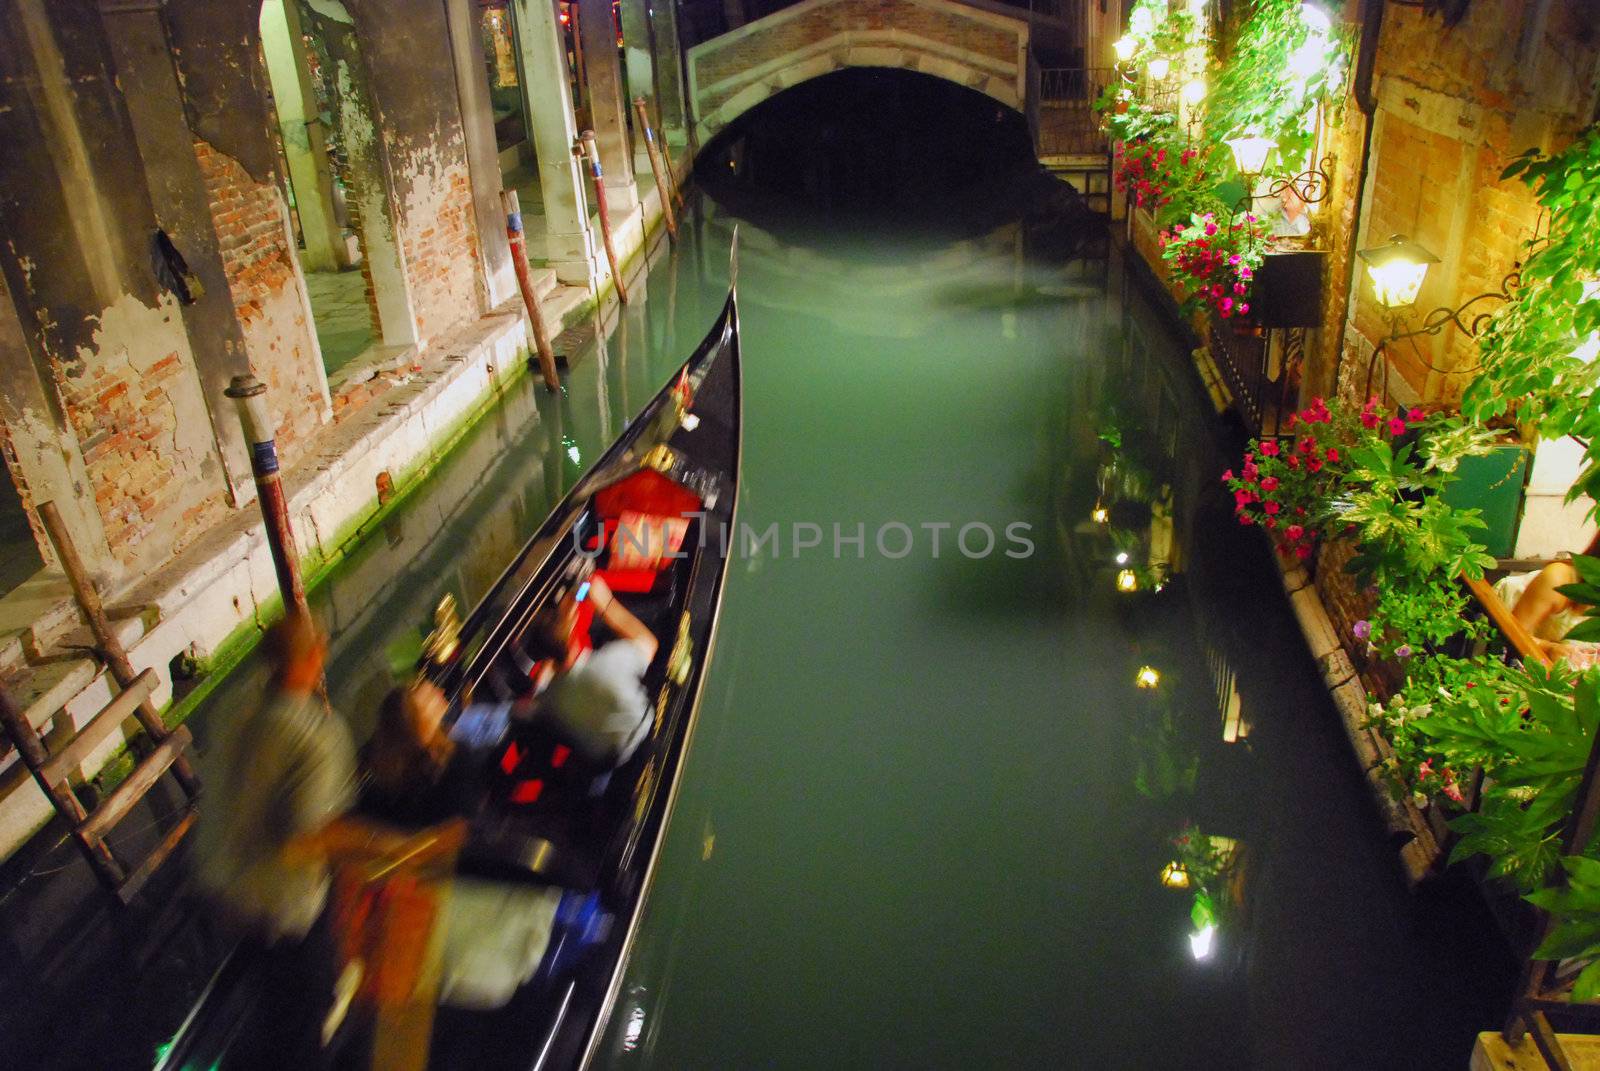 Gondola, Venice, May 2007 by jovannig